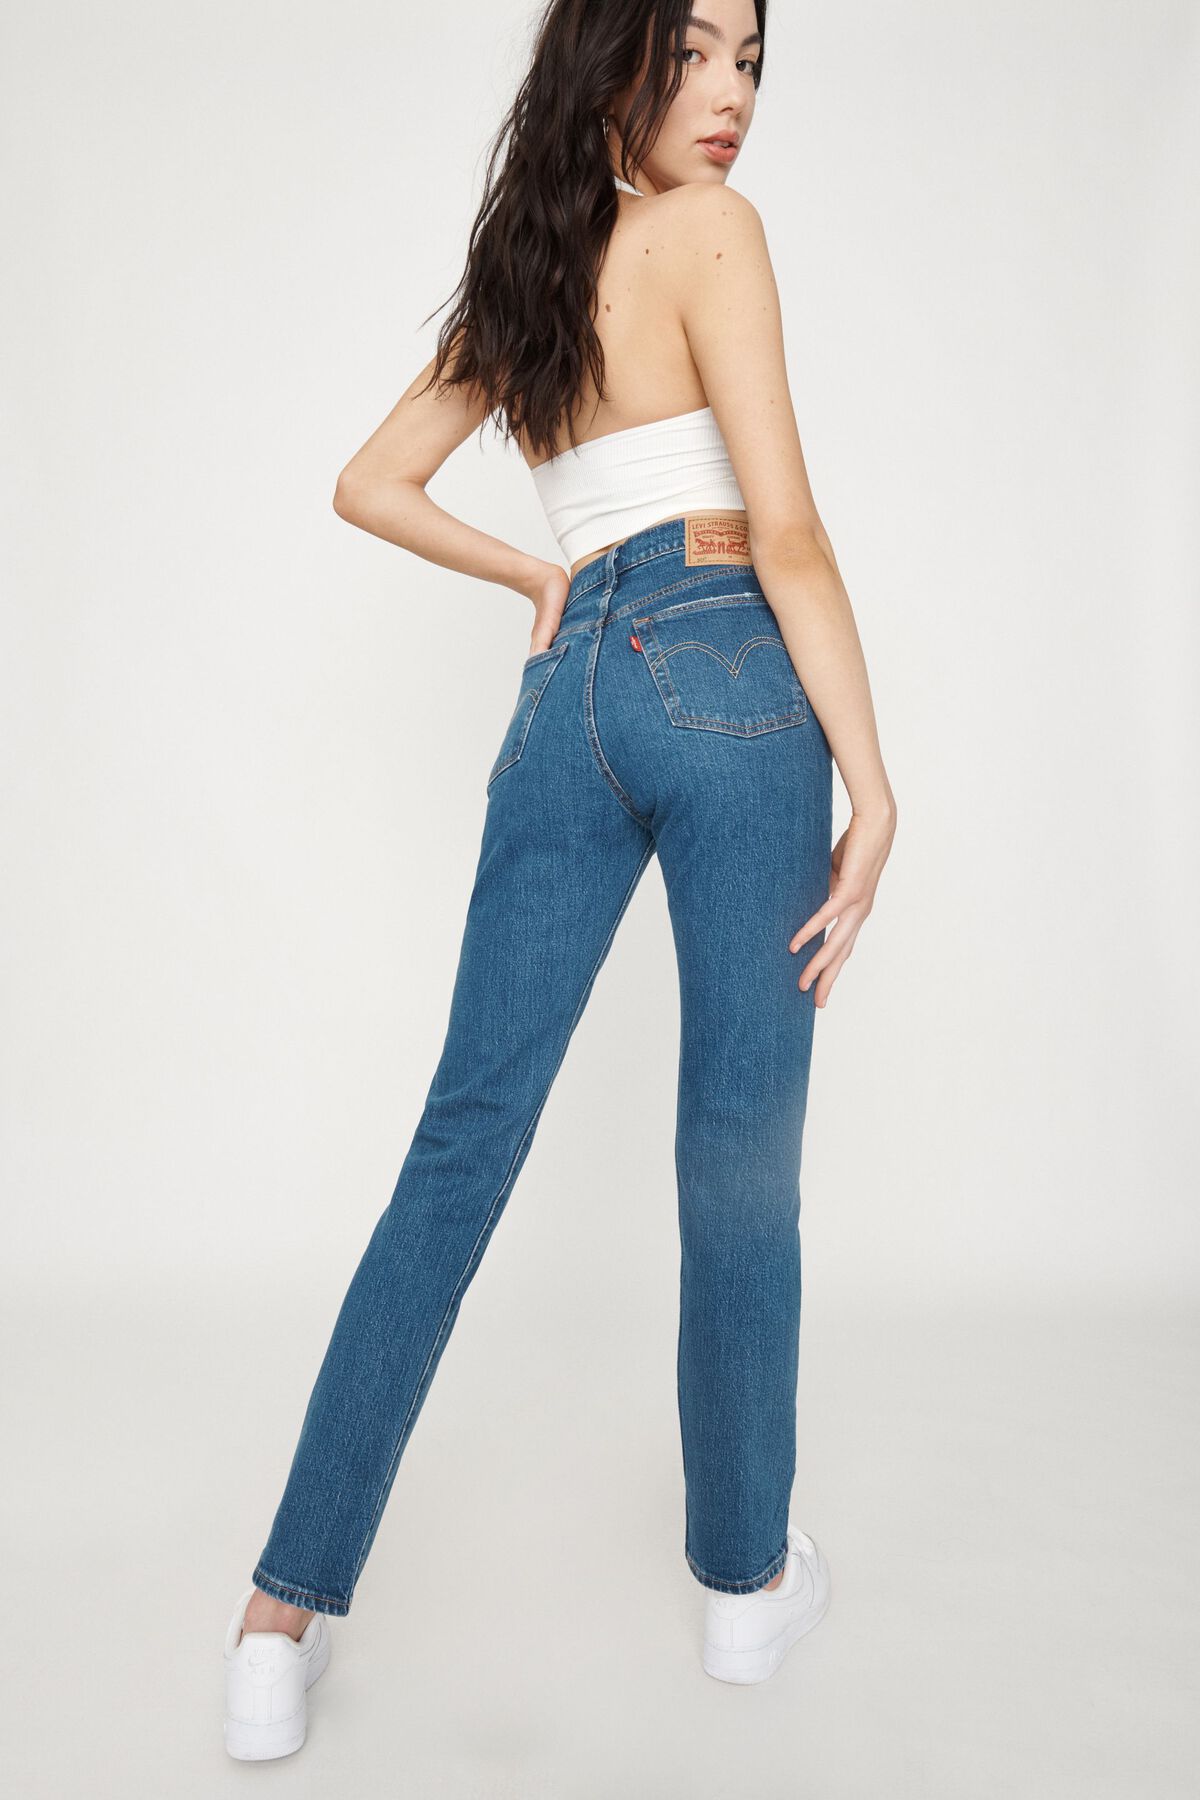  Levis 501 Womens Jeans